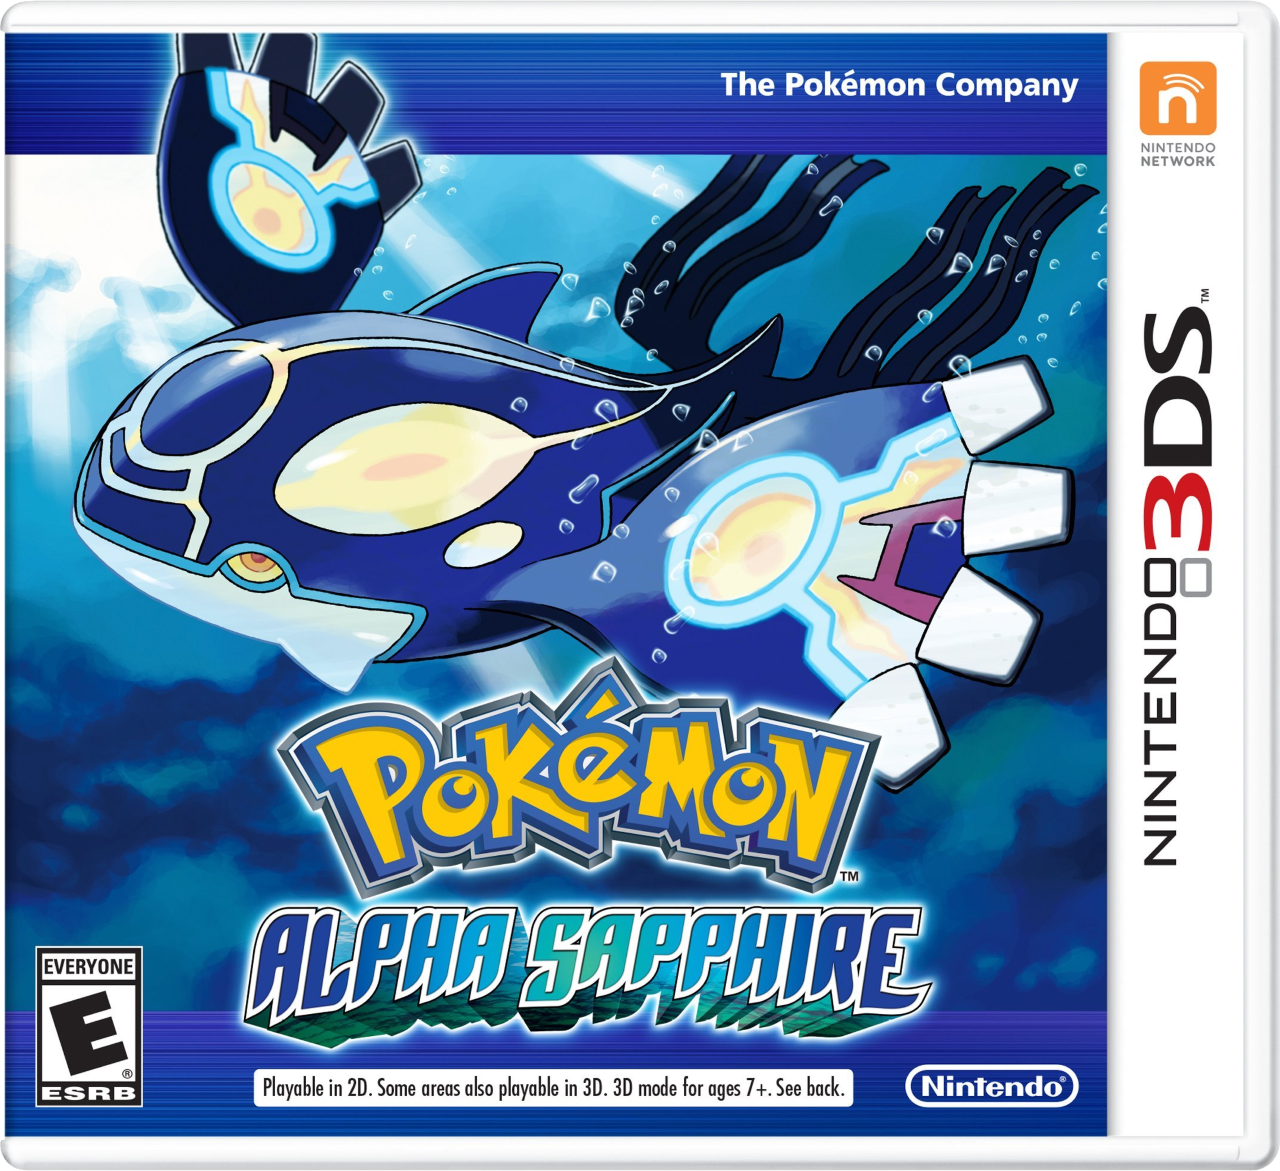 Pokémon Alpha Sapphire En Box Art Pokémon Omega Ruby And Alpha Sapphire